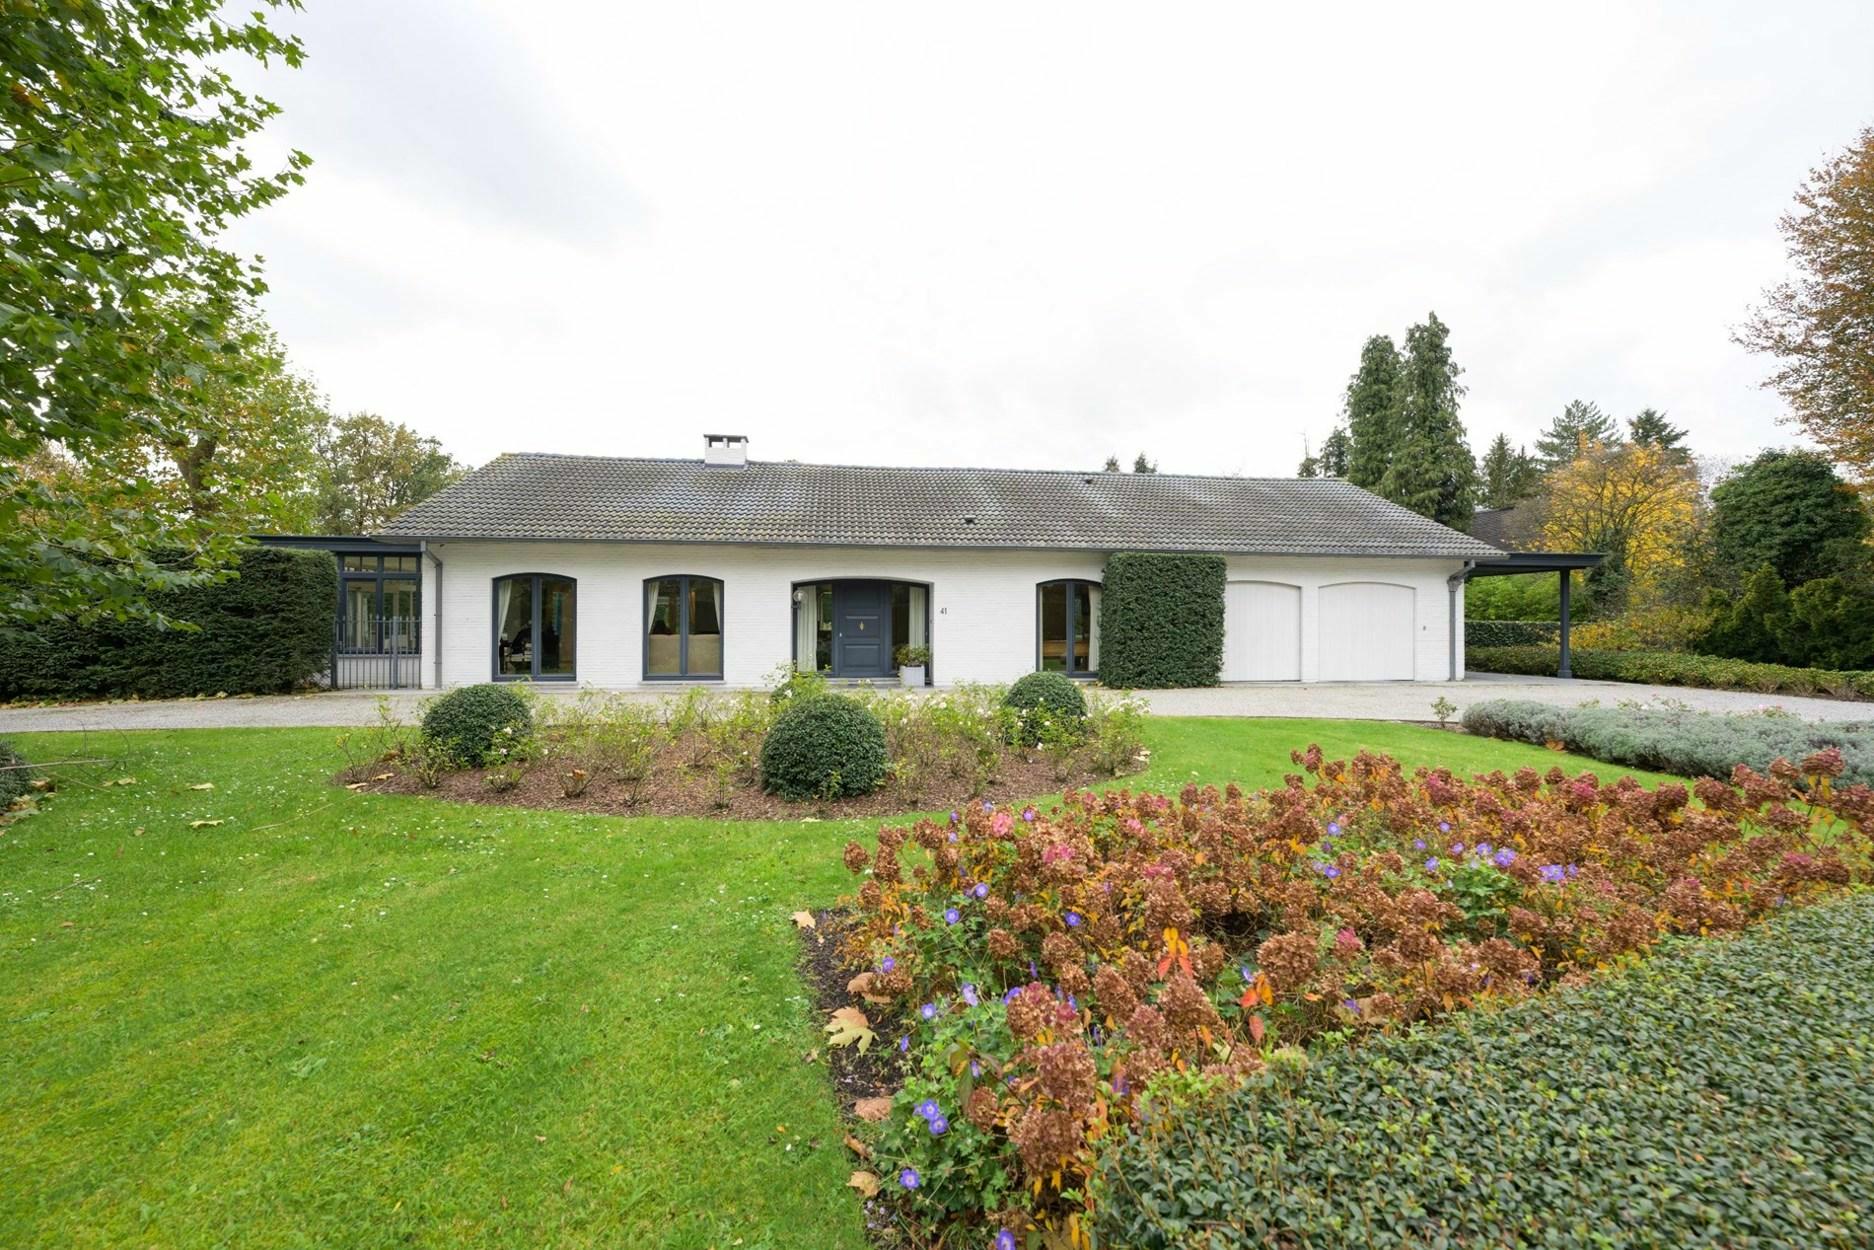 Residentieel in het groen gelegen klassieke villa op een terrein van 2175m2 te Heusden-Zolder.